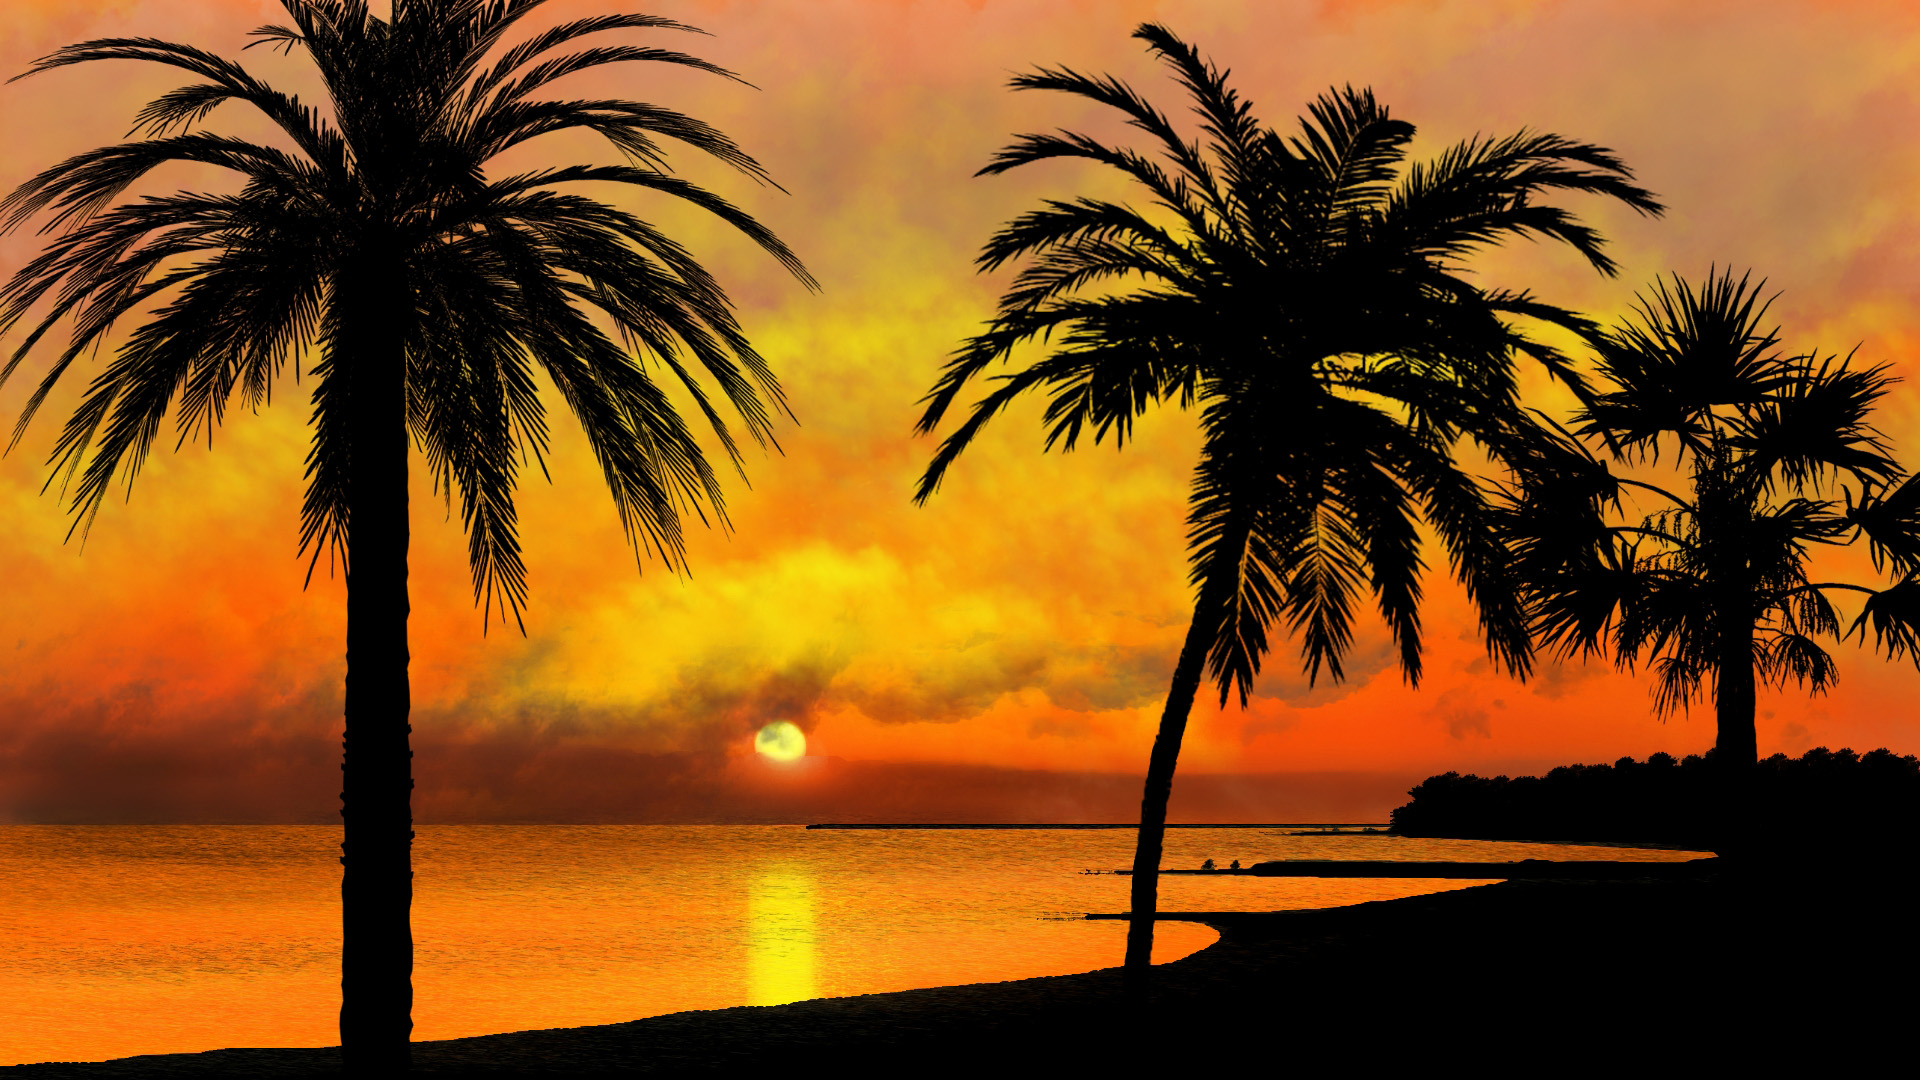 风景大片,落日余晖,椰树,海岸,太阳